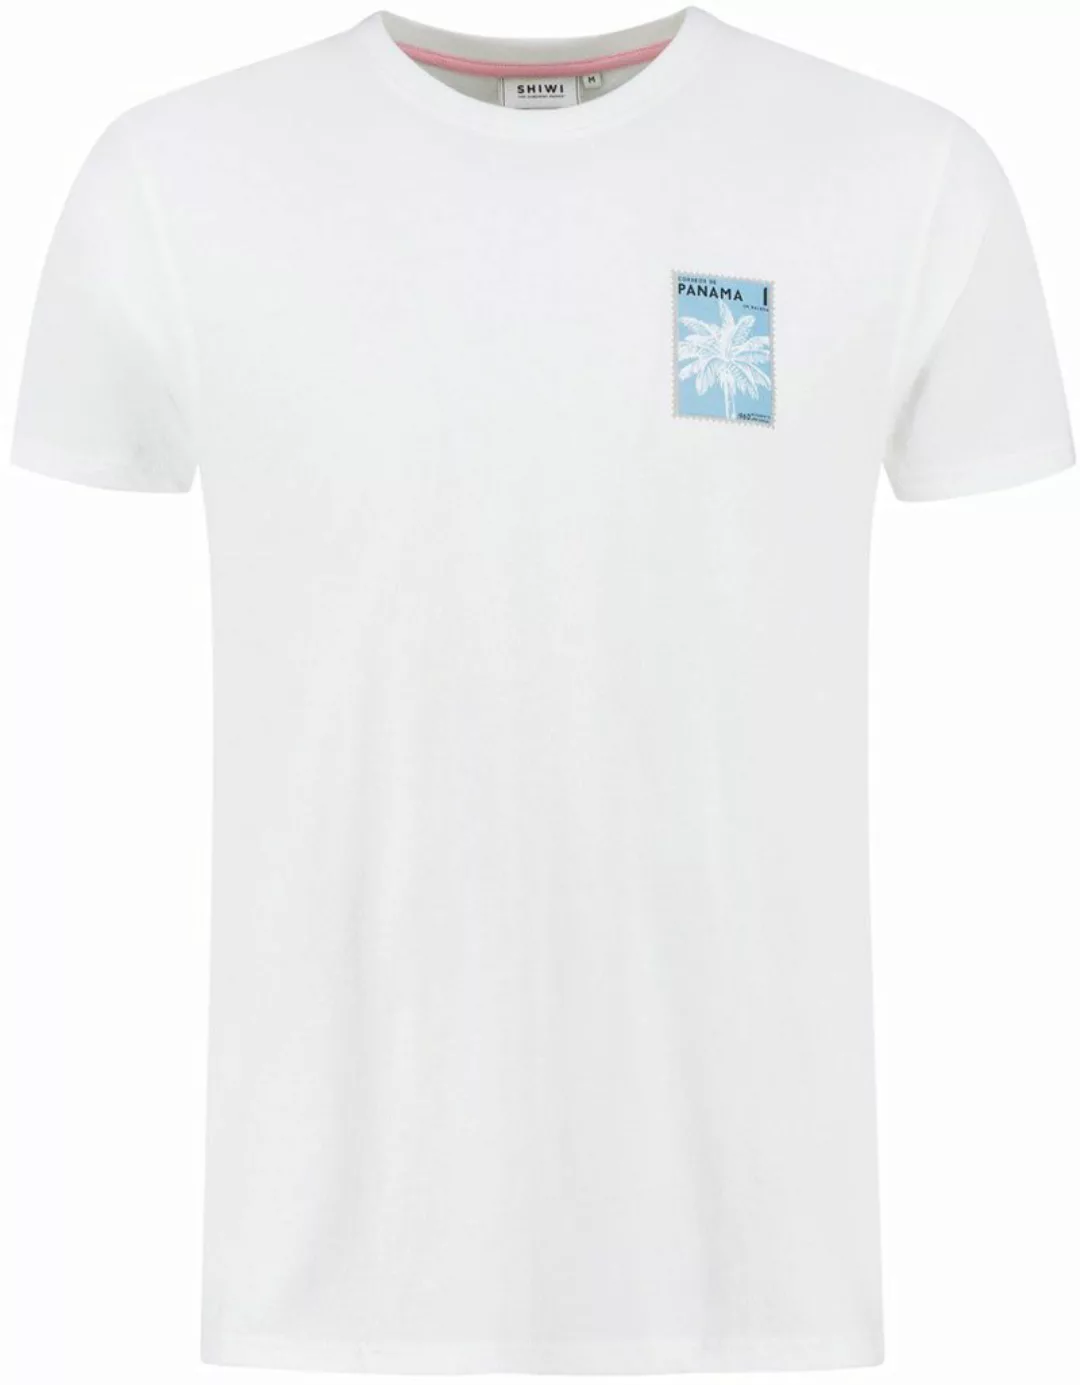 Shiwi T Shirt Panama Post Weiß - Größe L günstig online kaufen